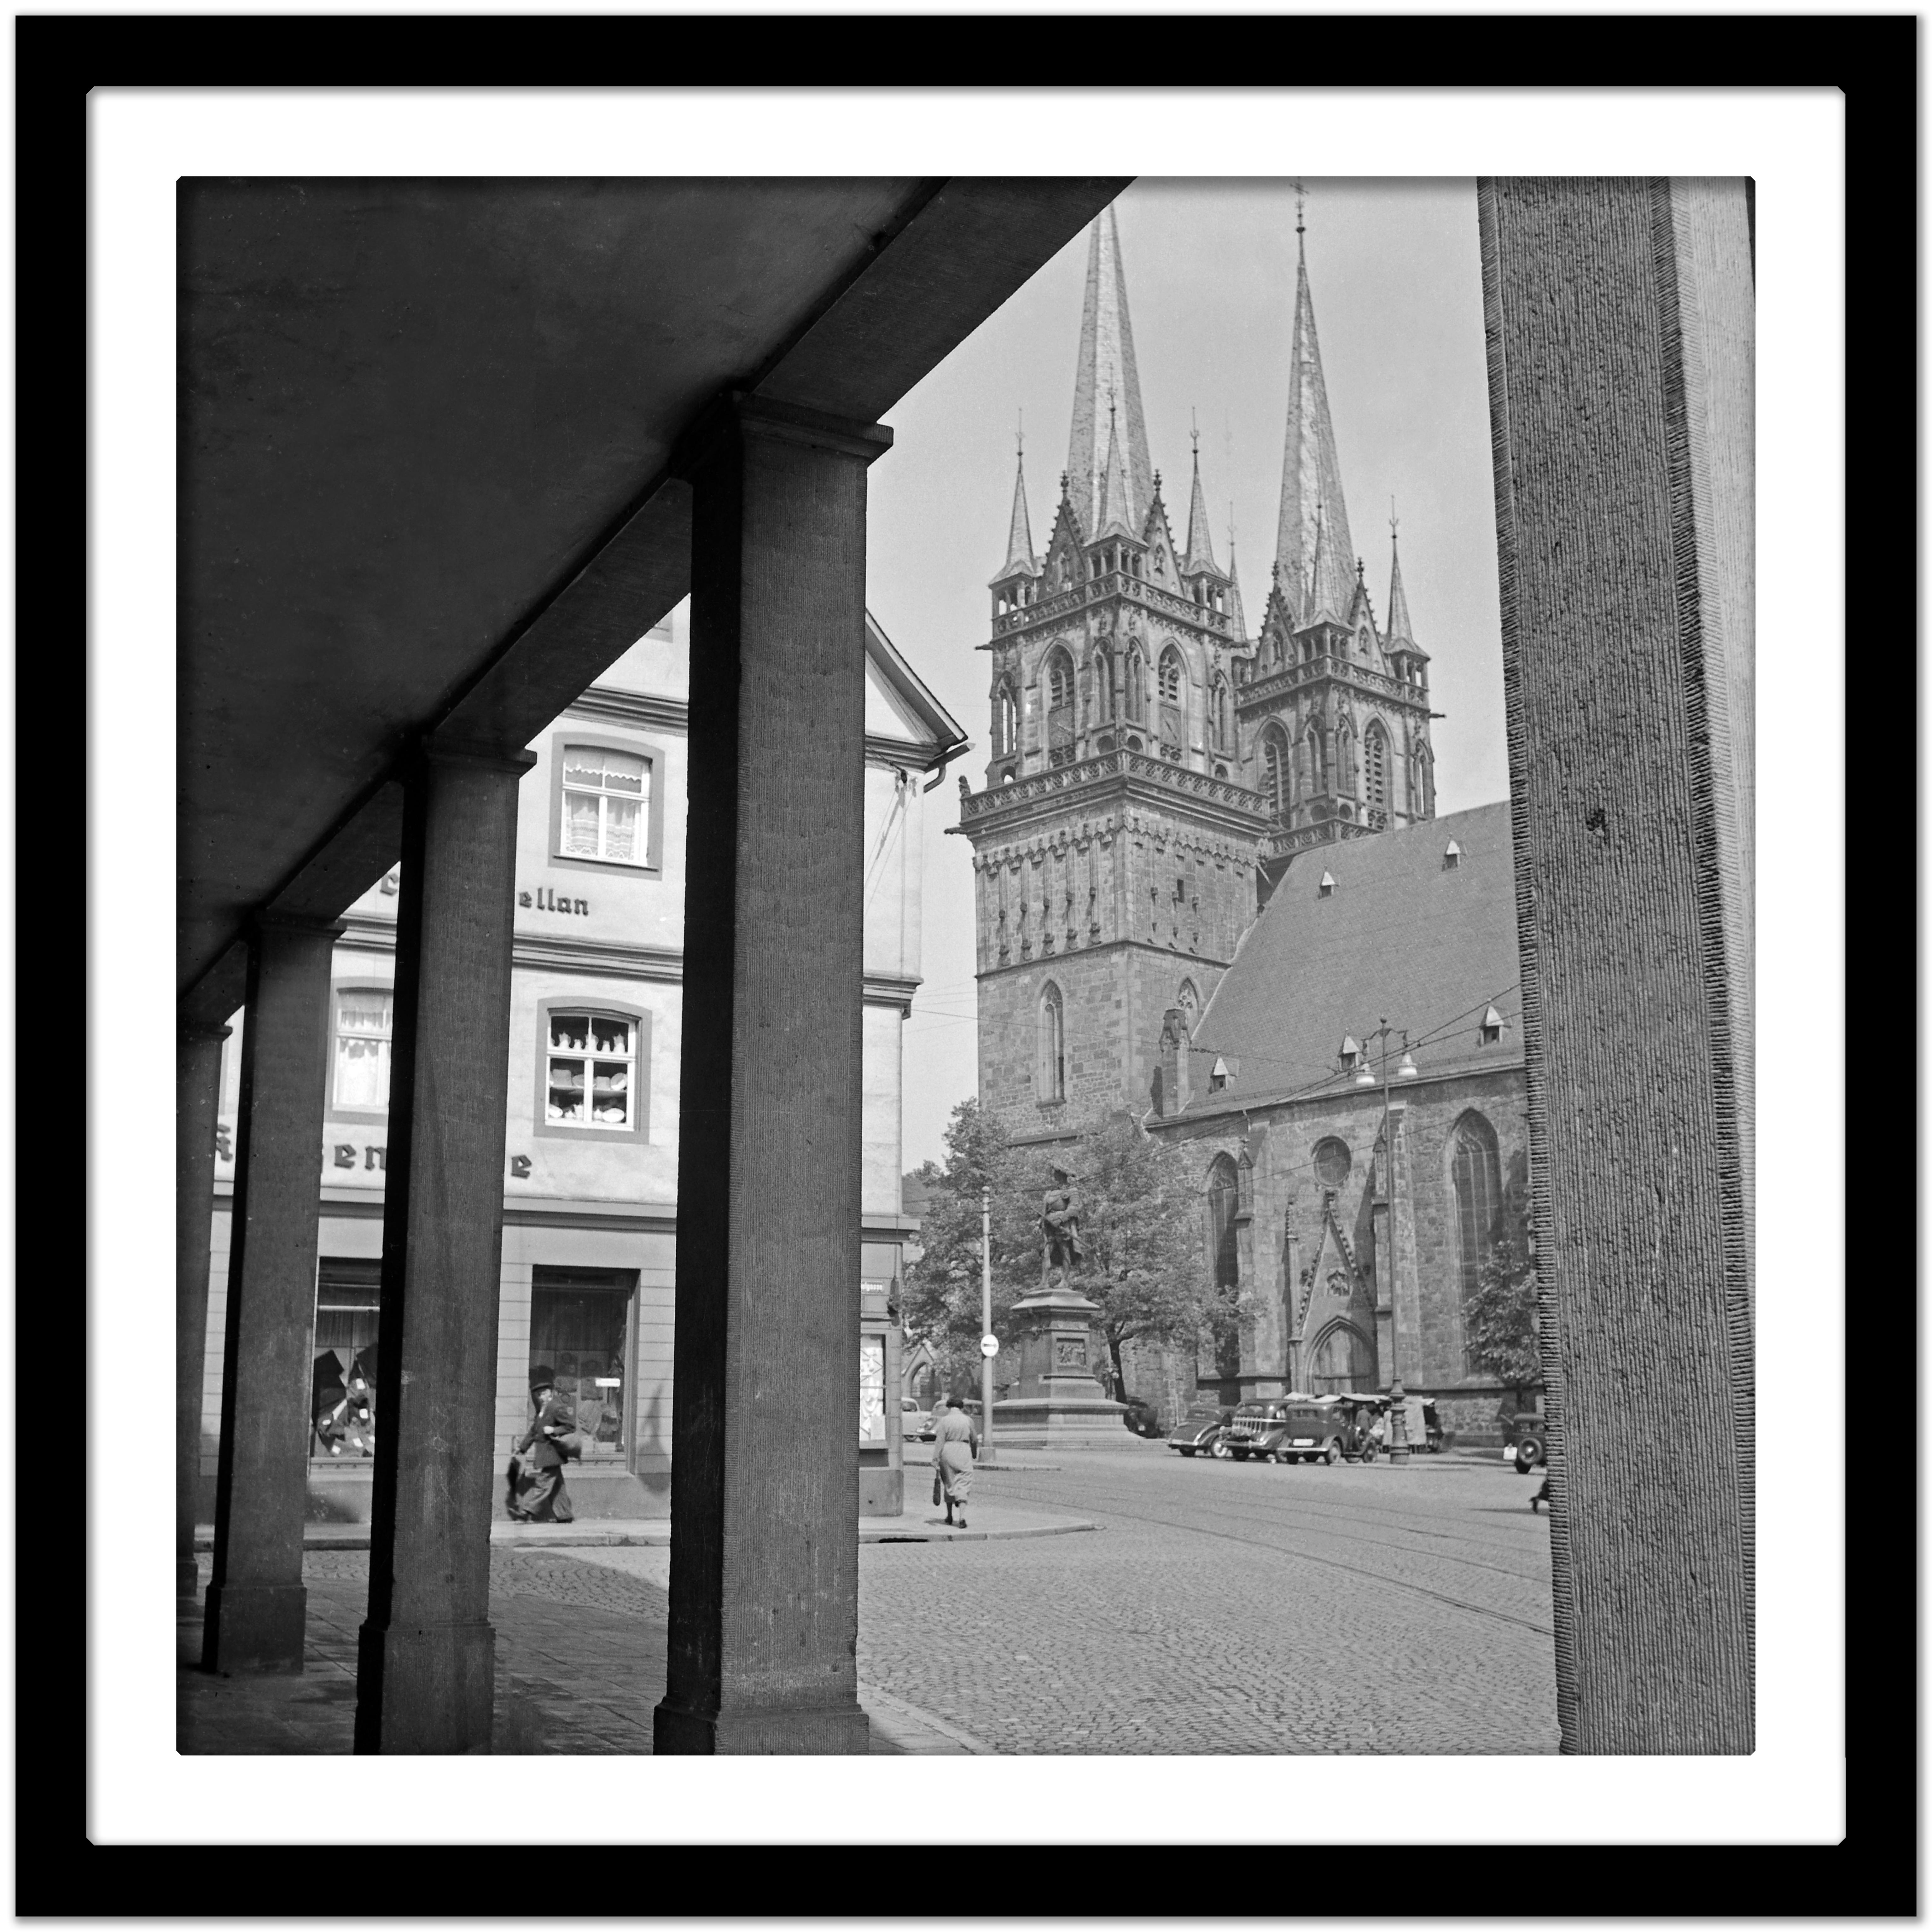 Protestantische St. Martin- Kirche in Kassel, Deutschland 1937 Später gedruckt  (Grau), Black and White Photograph, von Karl Heinrich Lämmel